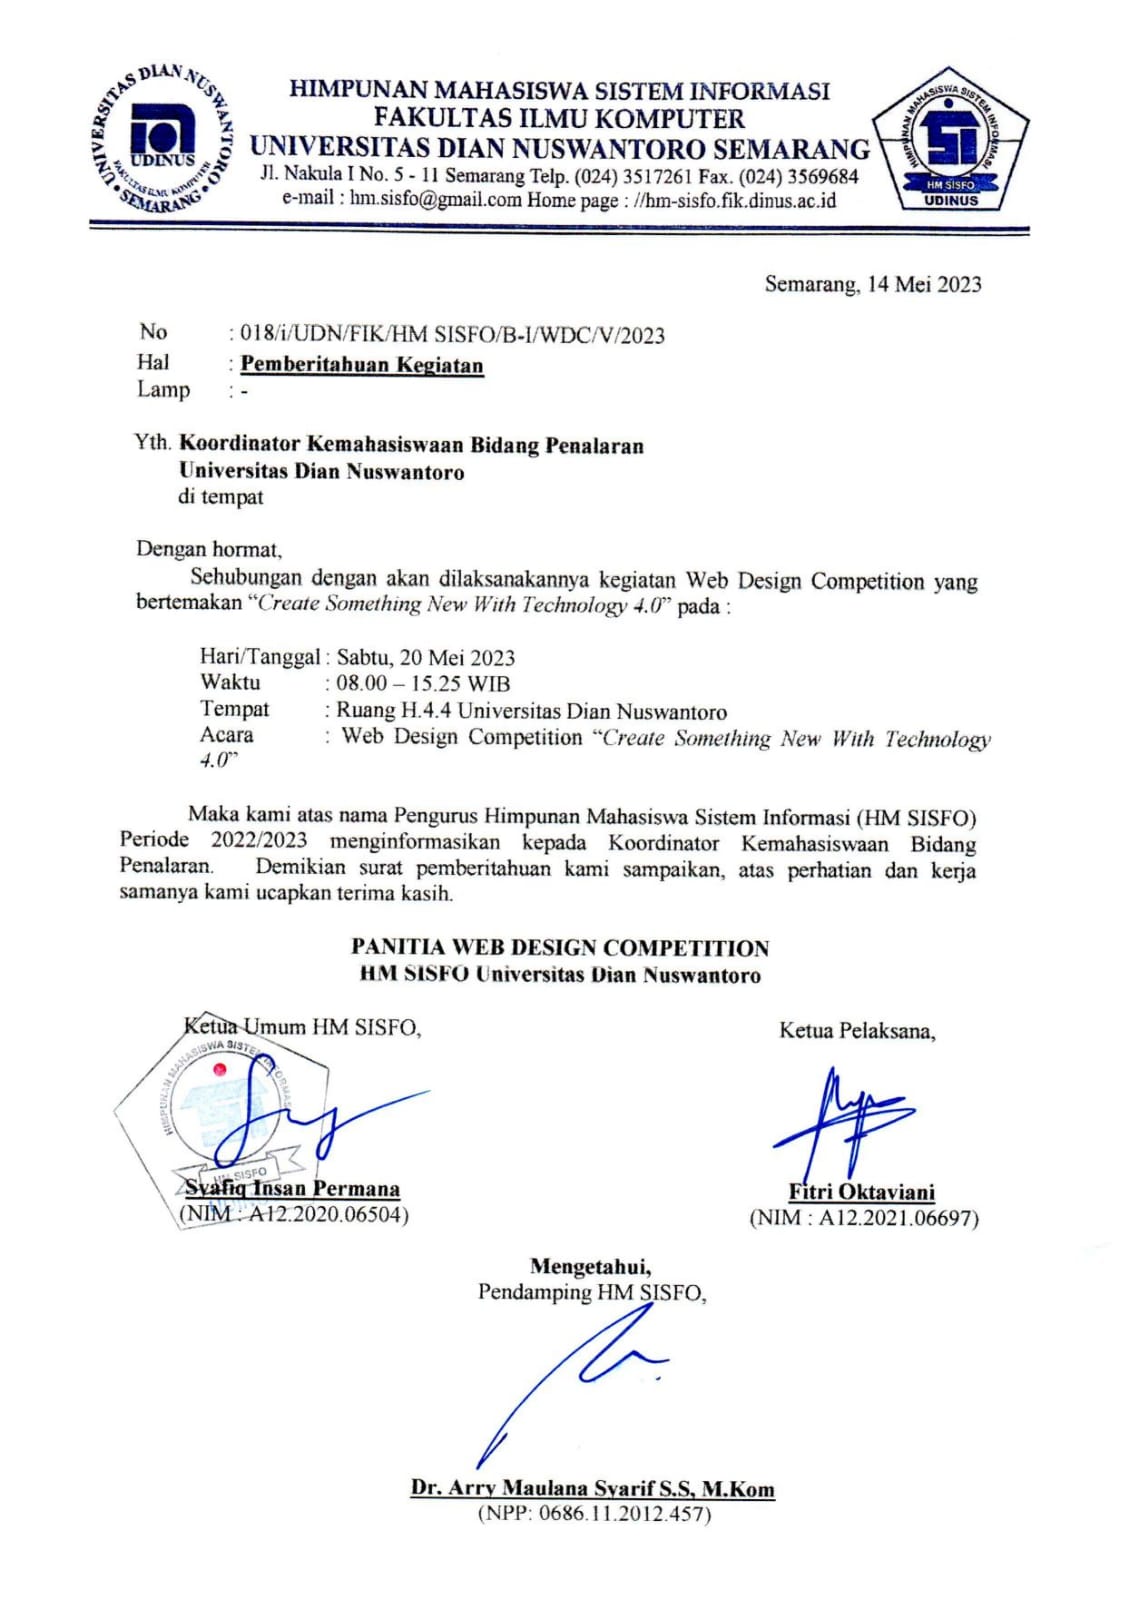 Surat Pemberitahuan Kegiatan Koordinator Kemahasiswaan Bidang Penalaran Universitas Dian Nuswantoro